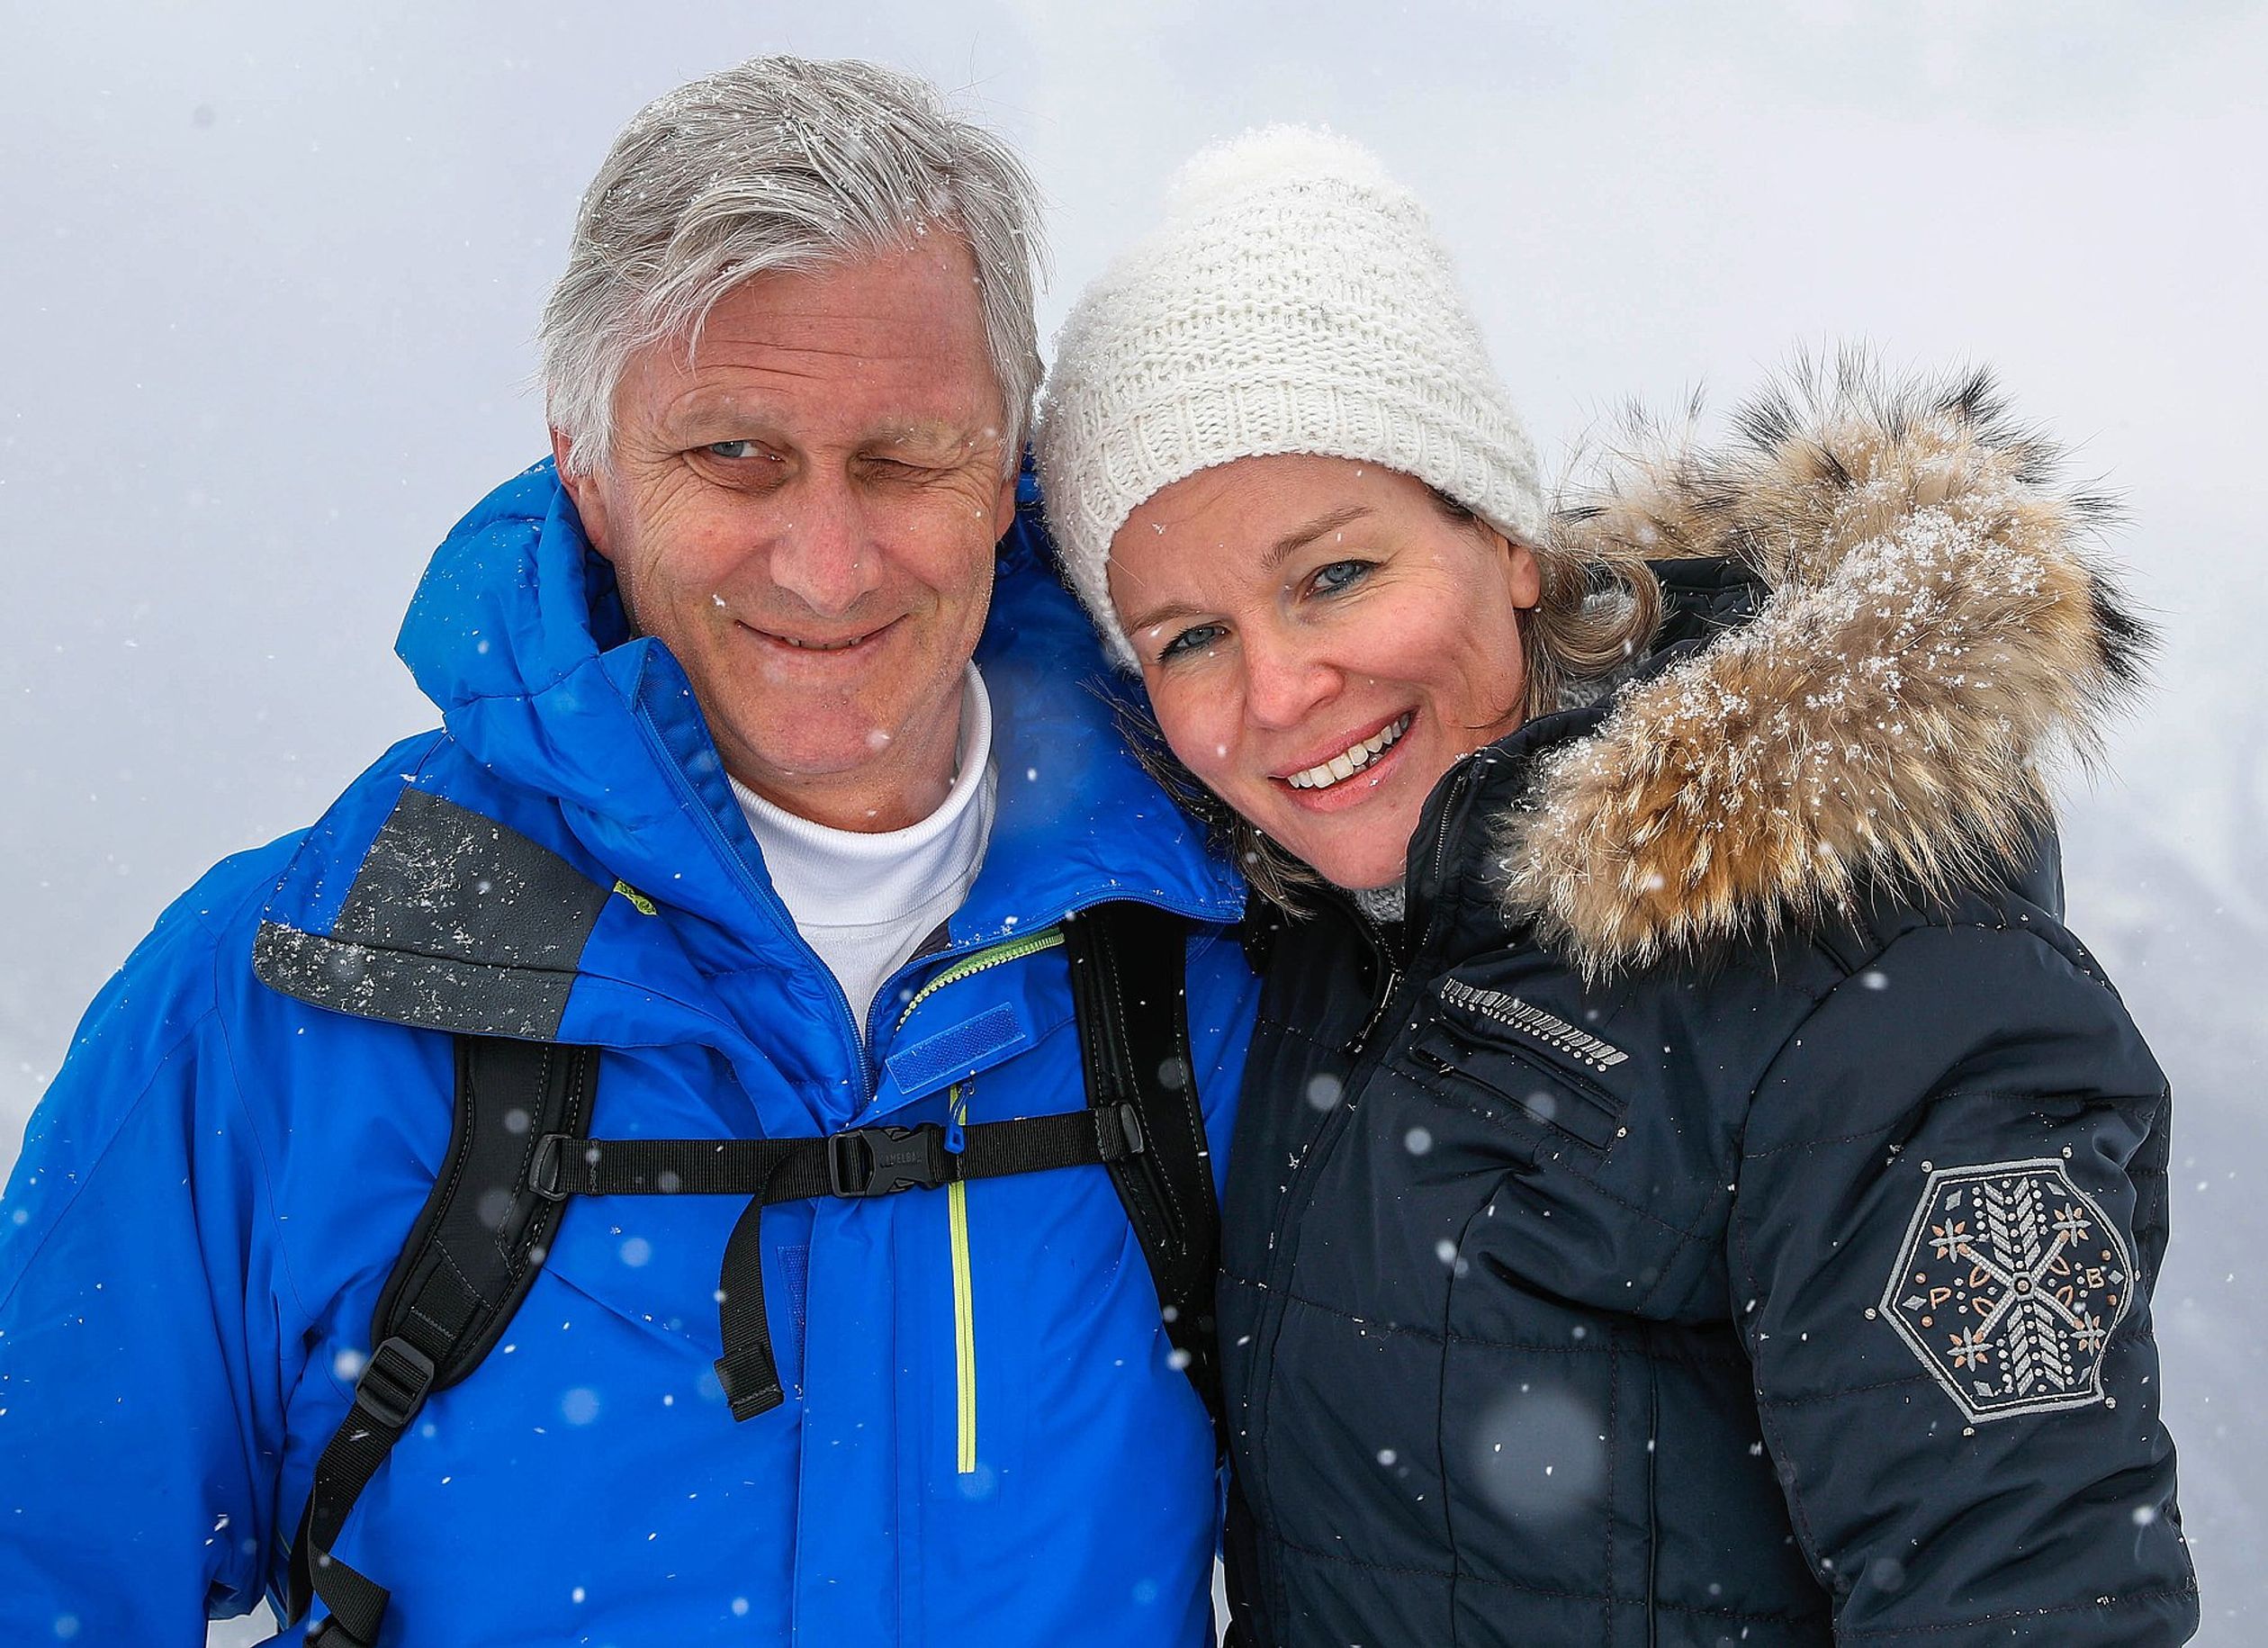 Filip en Mathilde tijdens hun skivakantie in Zwitserland, 2018.